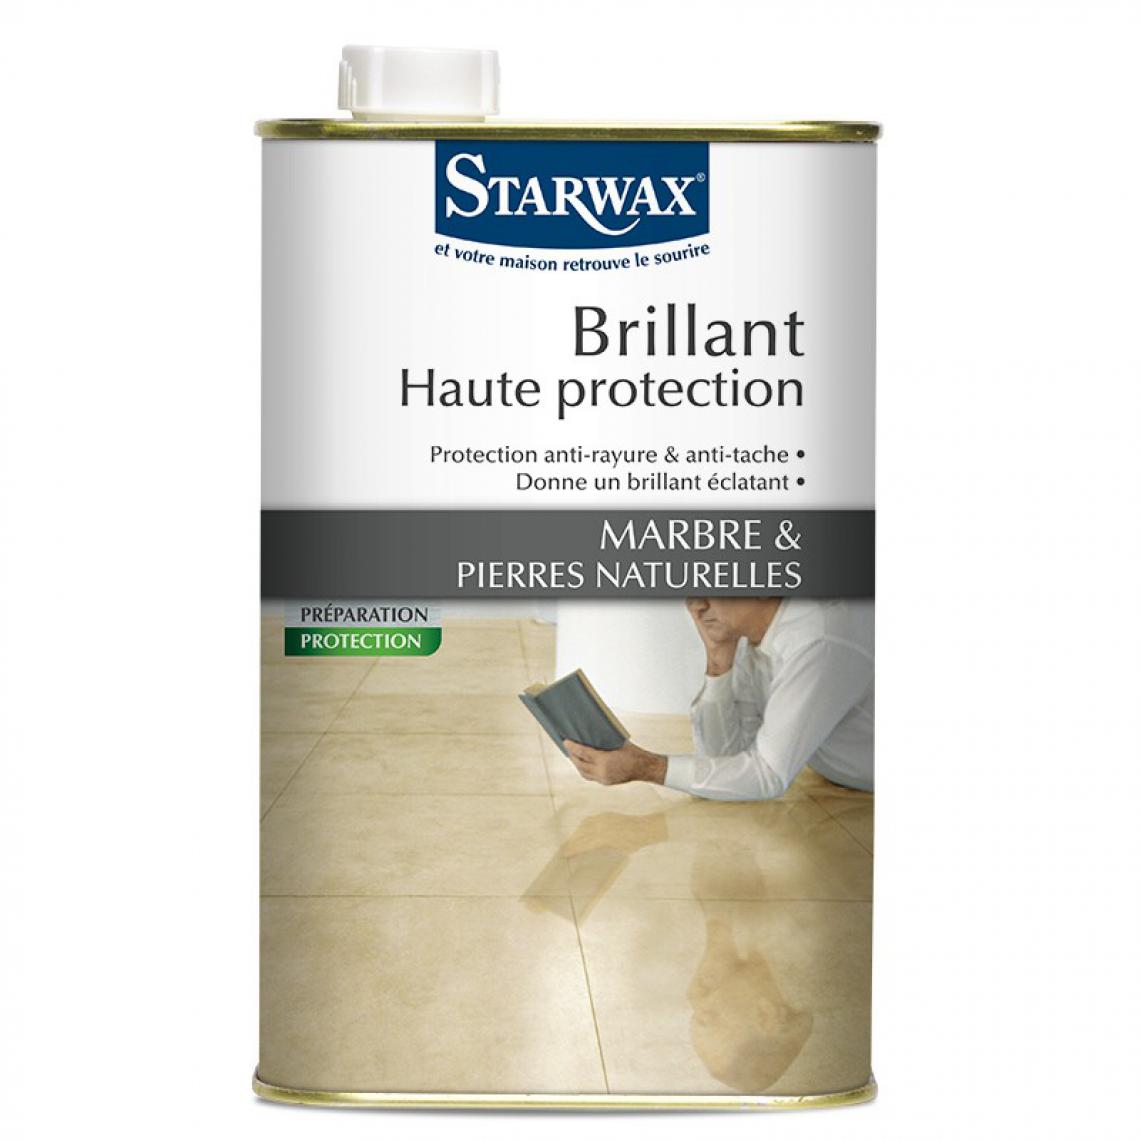 Starwax - Brillant haute protection STARWAK Marbre et pierres - 1L - 330 - Matériel de pose, produits d'entretien